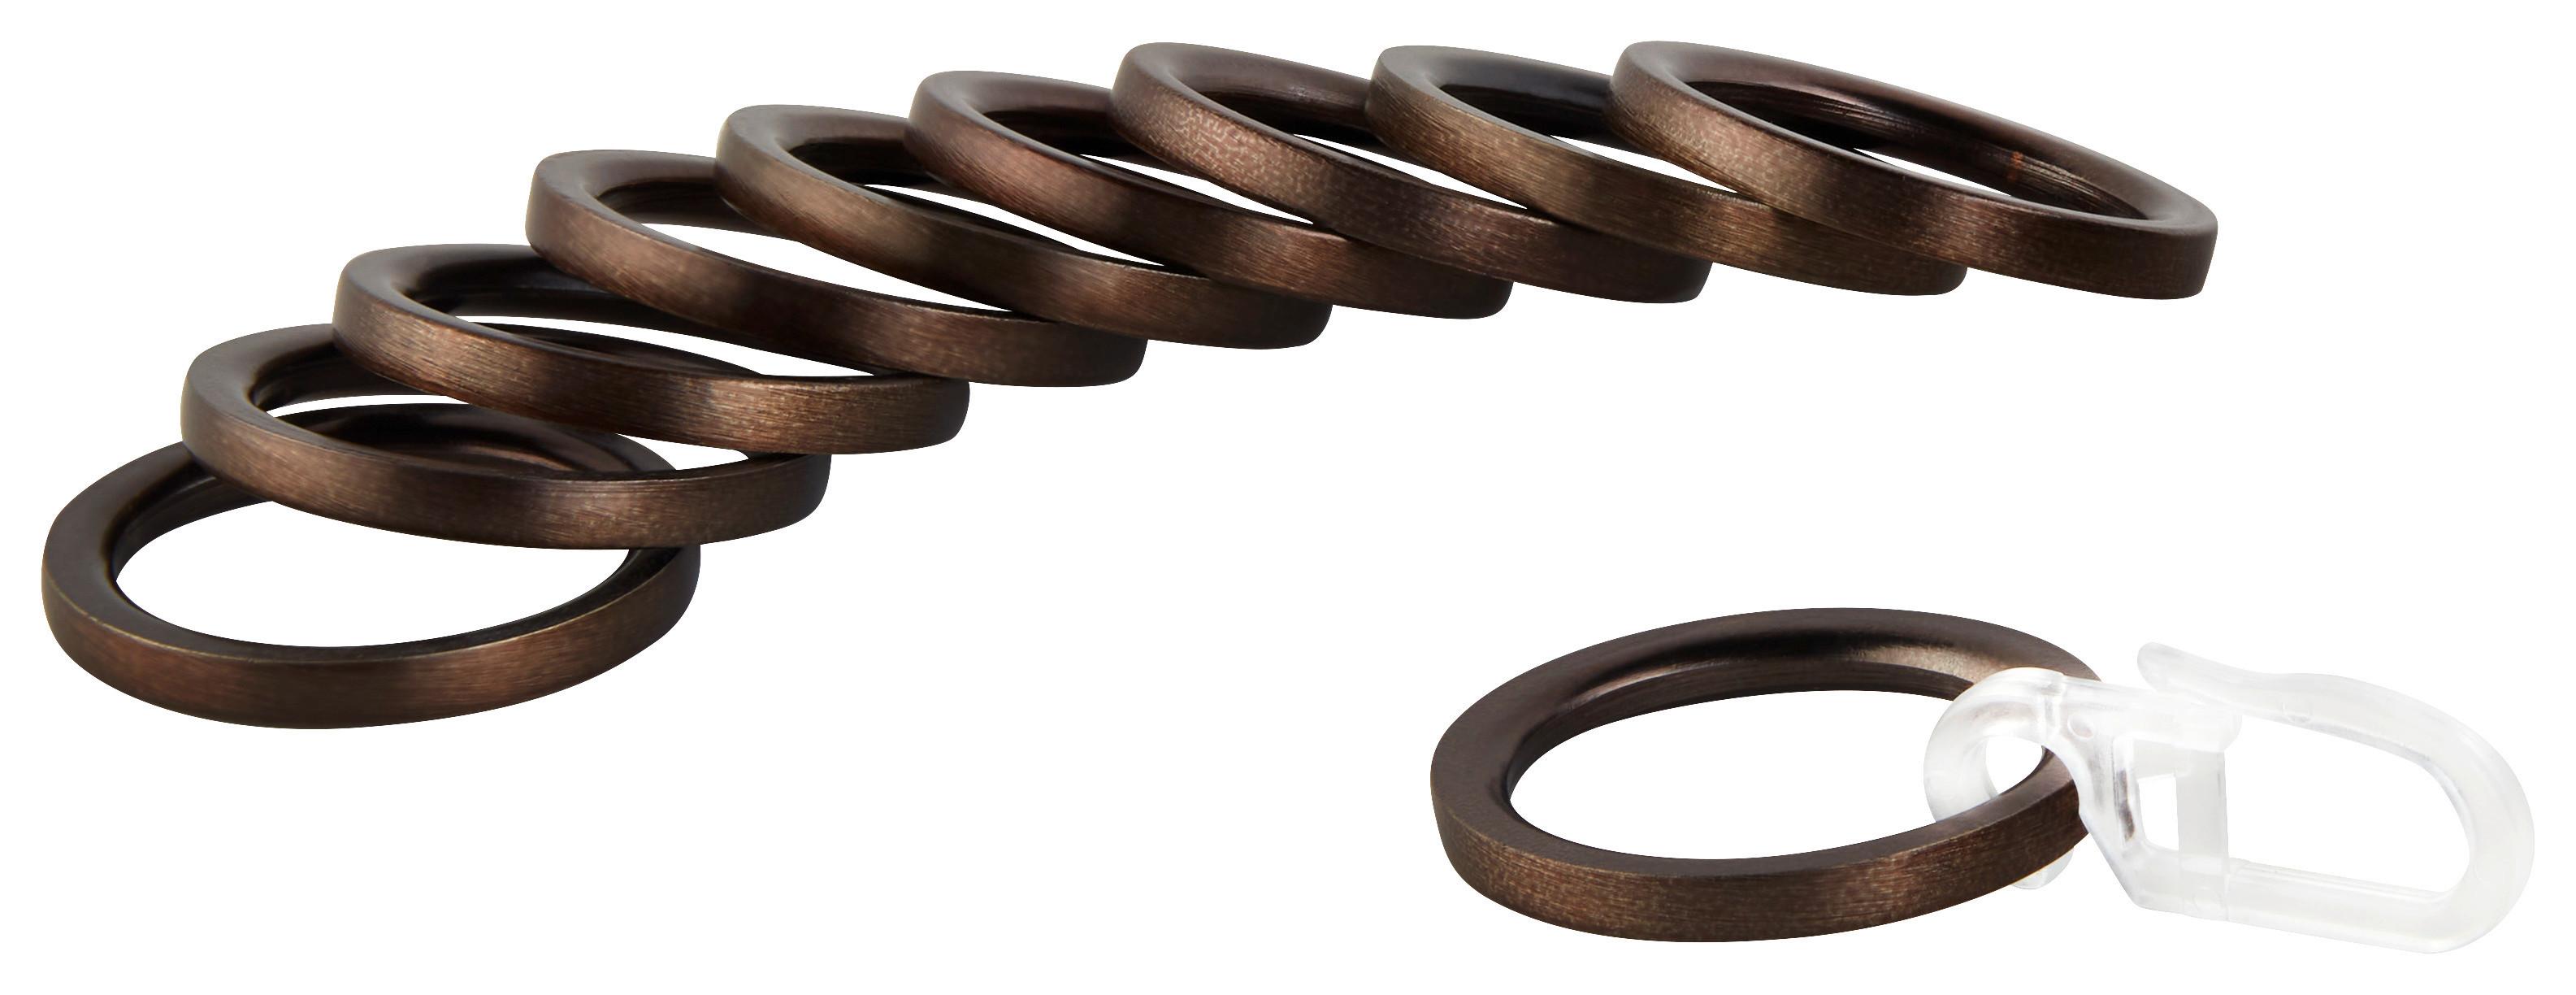 Ringeset für Rillcube in Bronzefarben 10 Stk. - Bronzefarben, Metall (1/1/1cm) - Modern Living